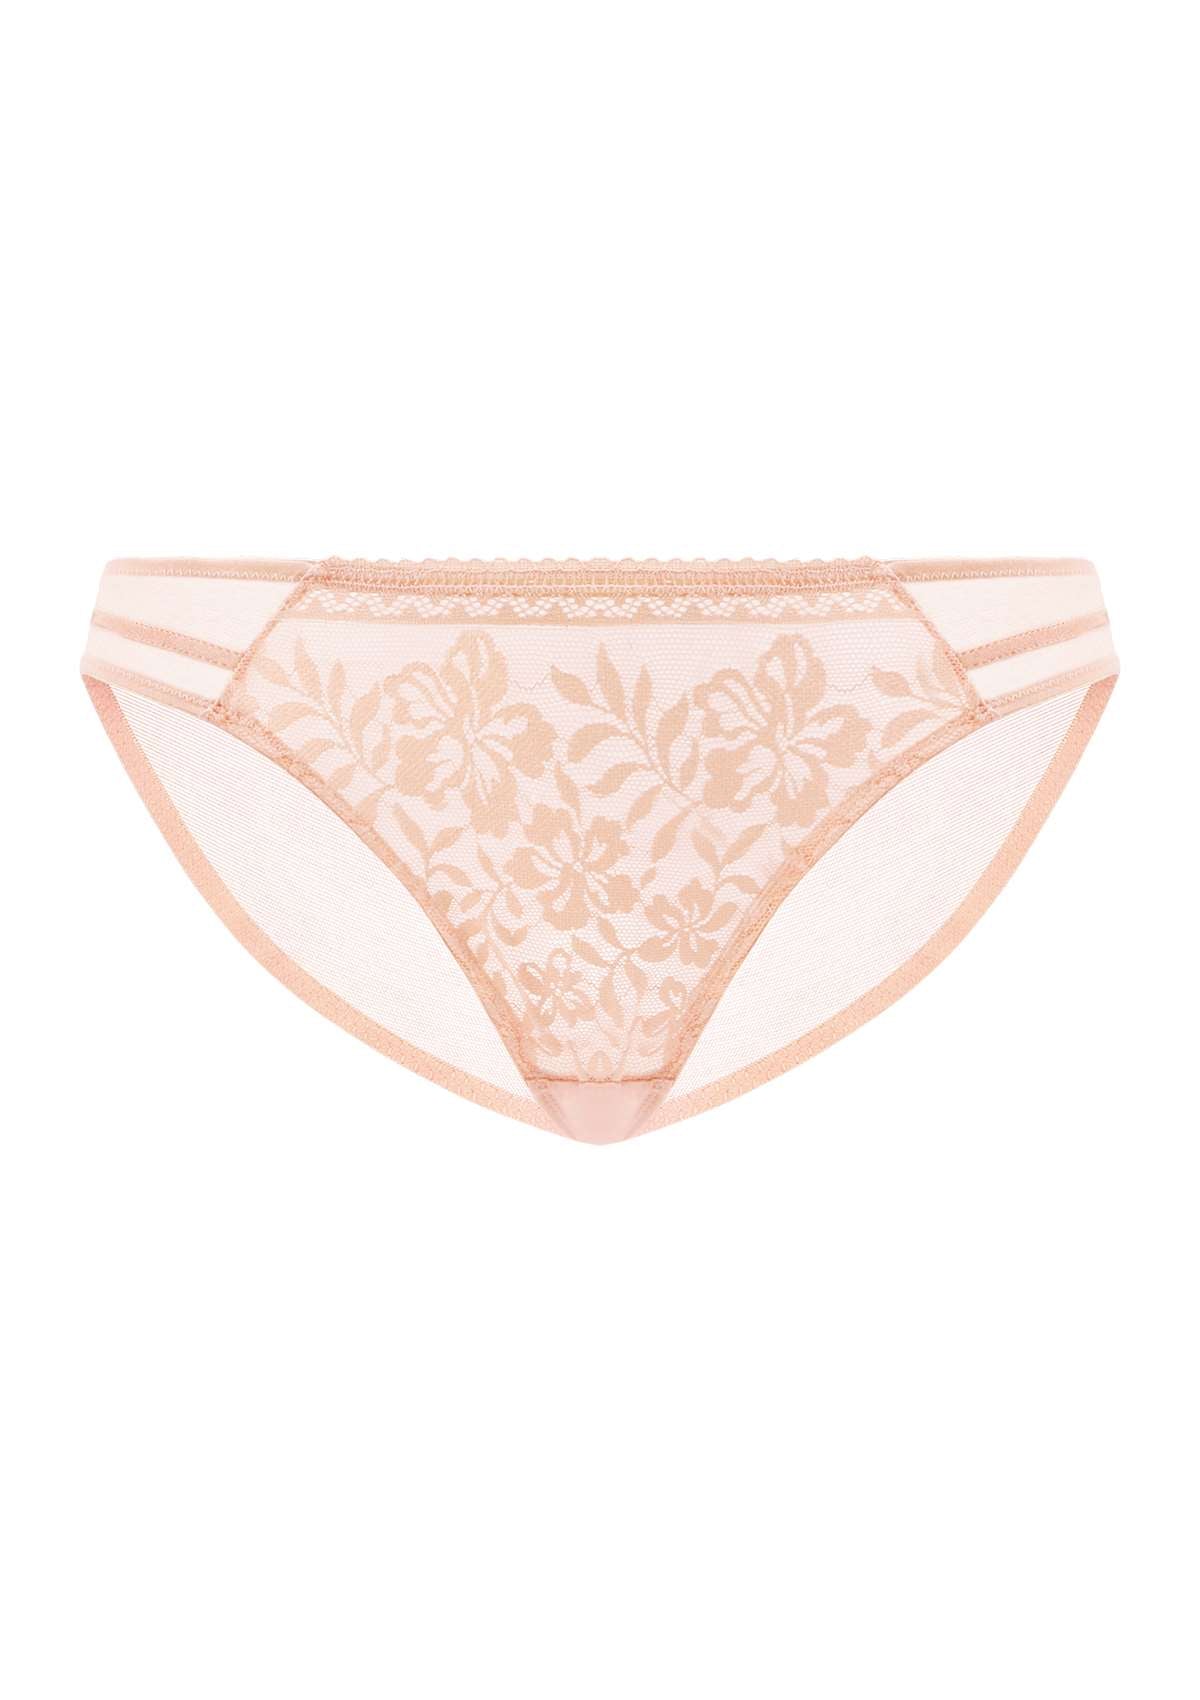 HSIA Gladioli Floral Lace Mesh Airy Elegant Beautiful Bikini Underwear - XL / Peach